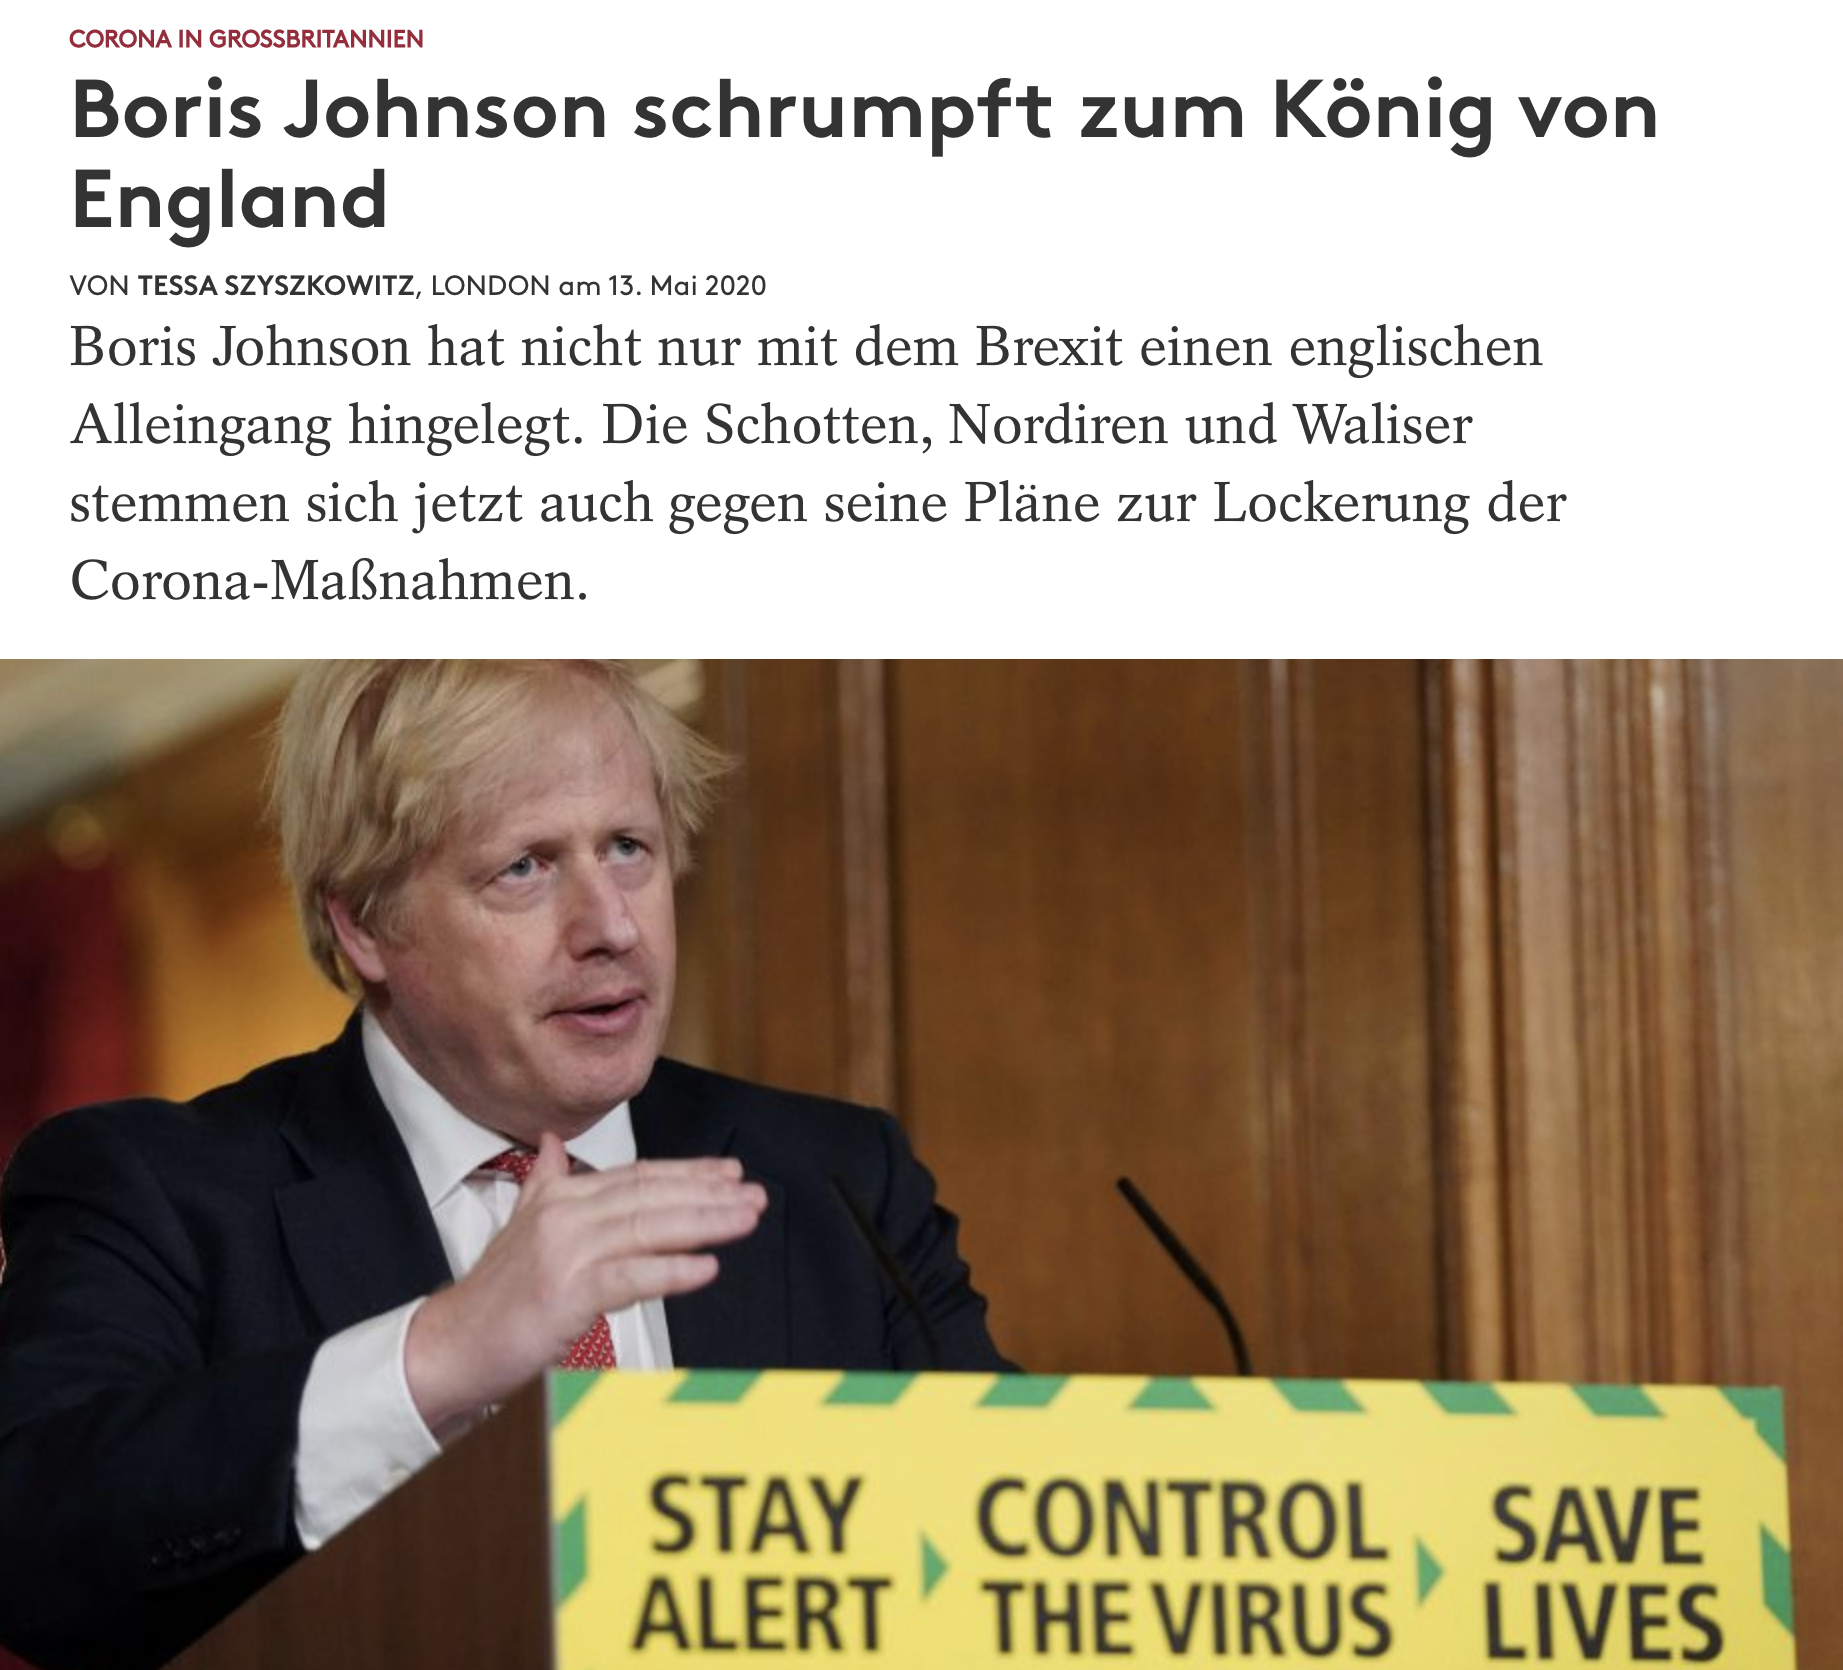 Boris Johnson schrumpft zum König von England